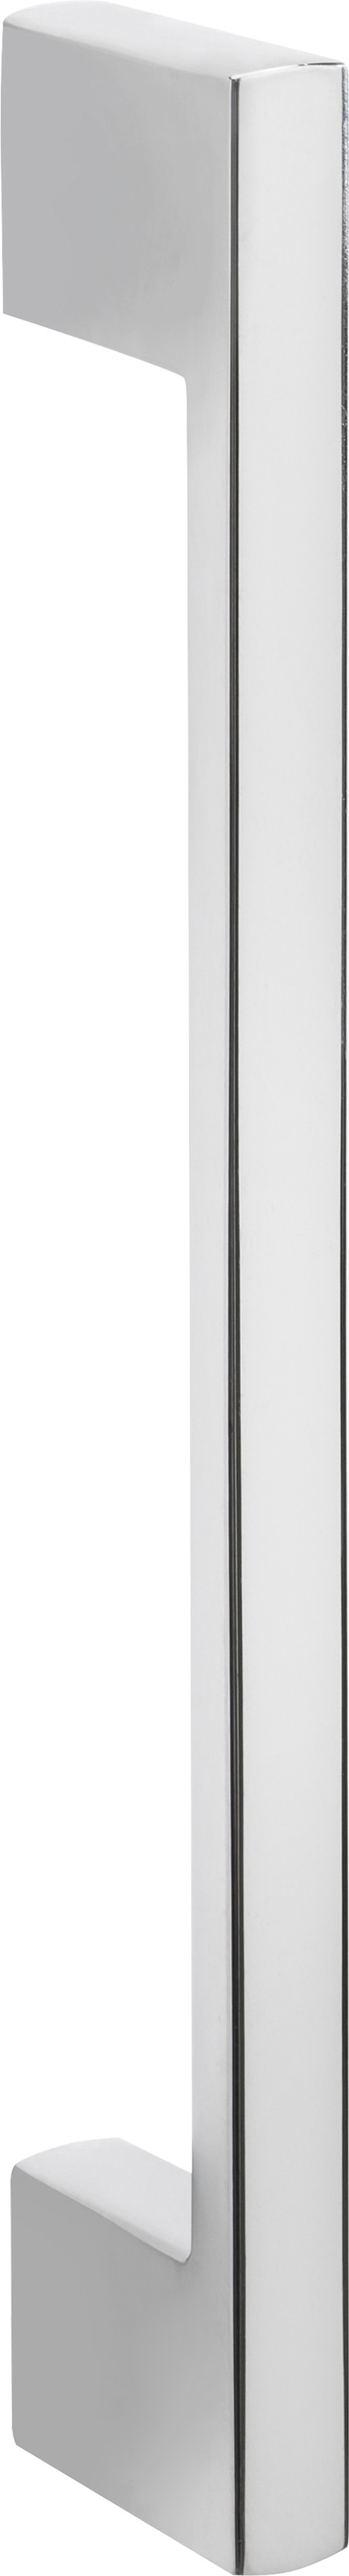 HELD MÖBEL Apothekerschrank »Colmar«, 30 cm breit, 165 cm hoch, mit 3  Ablagen, mit Metallgriff kaufen | BAUR